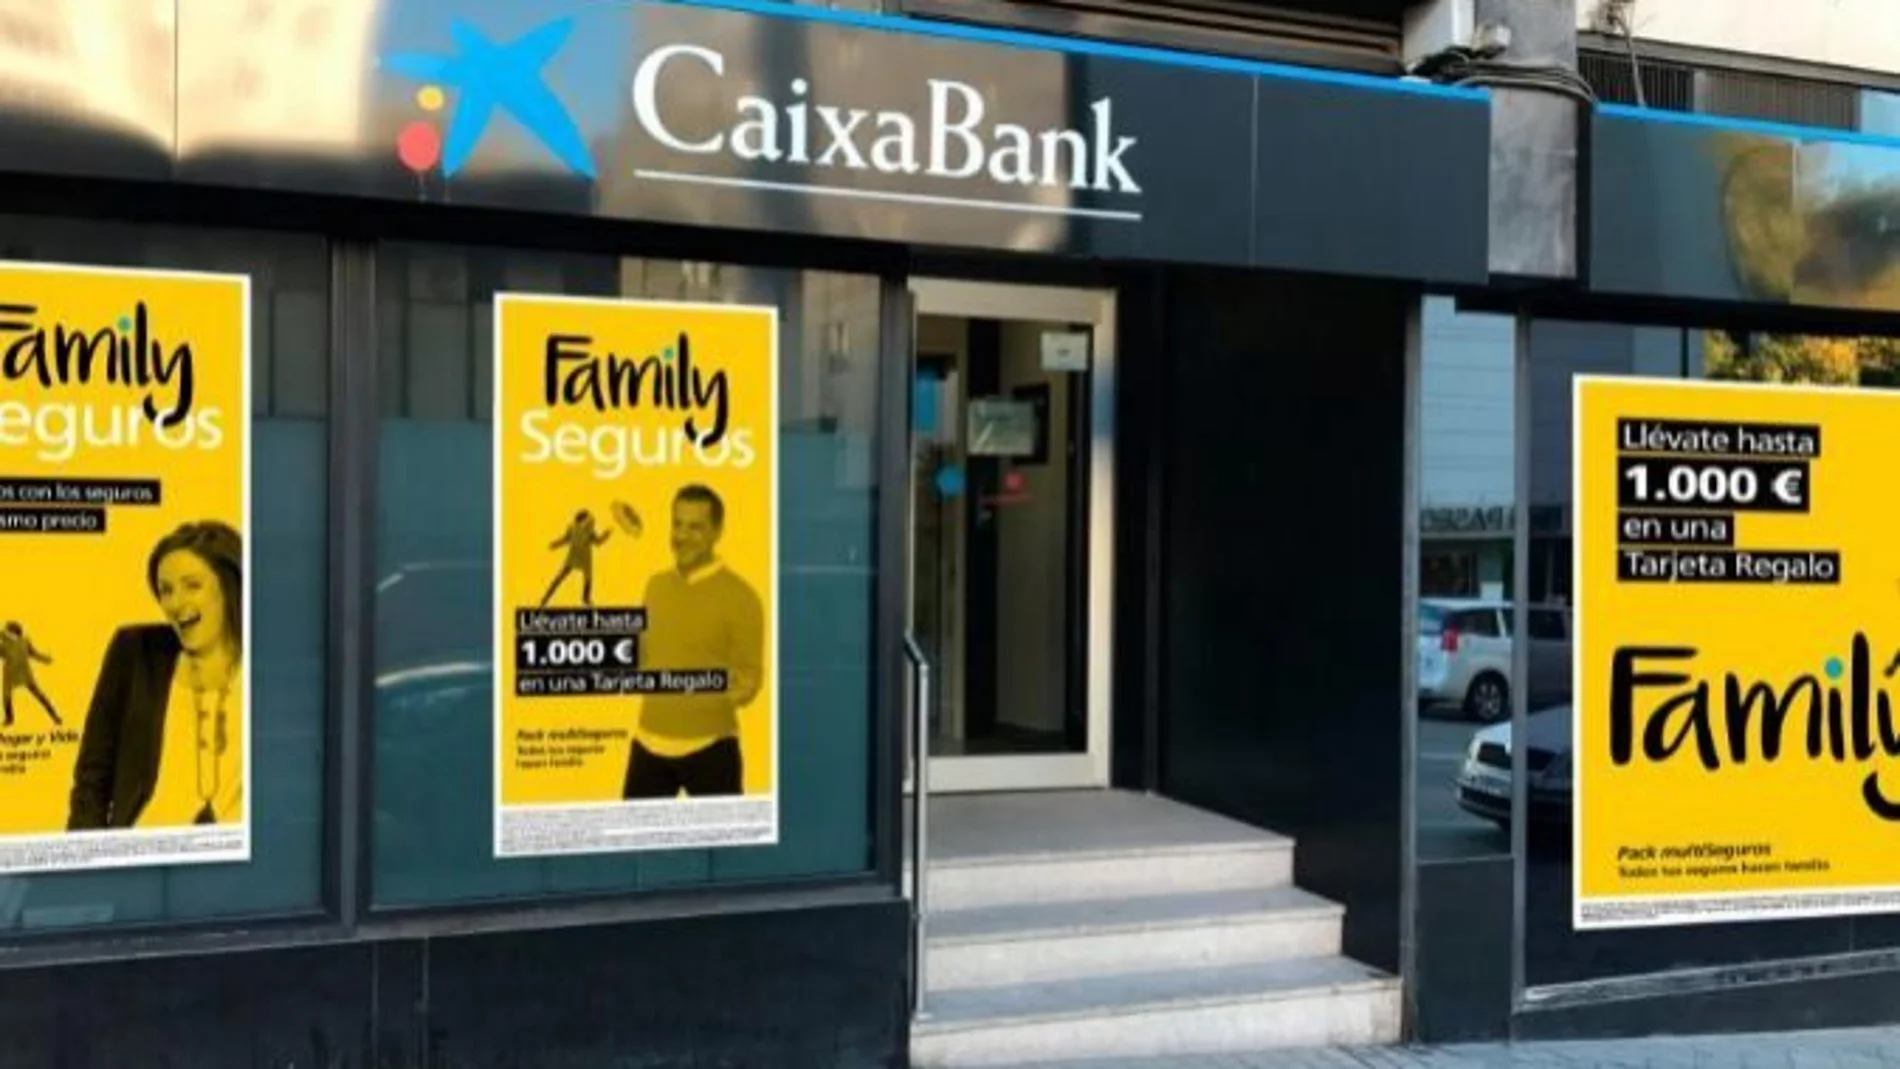 Oficina de CaixaBank. Foto: Archivo